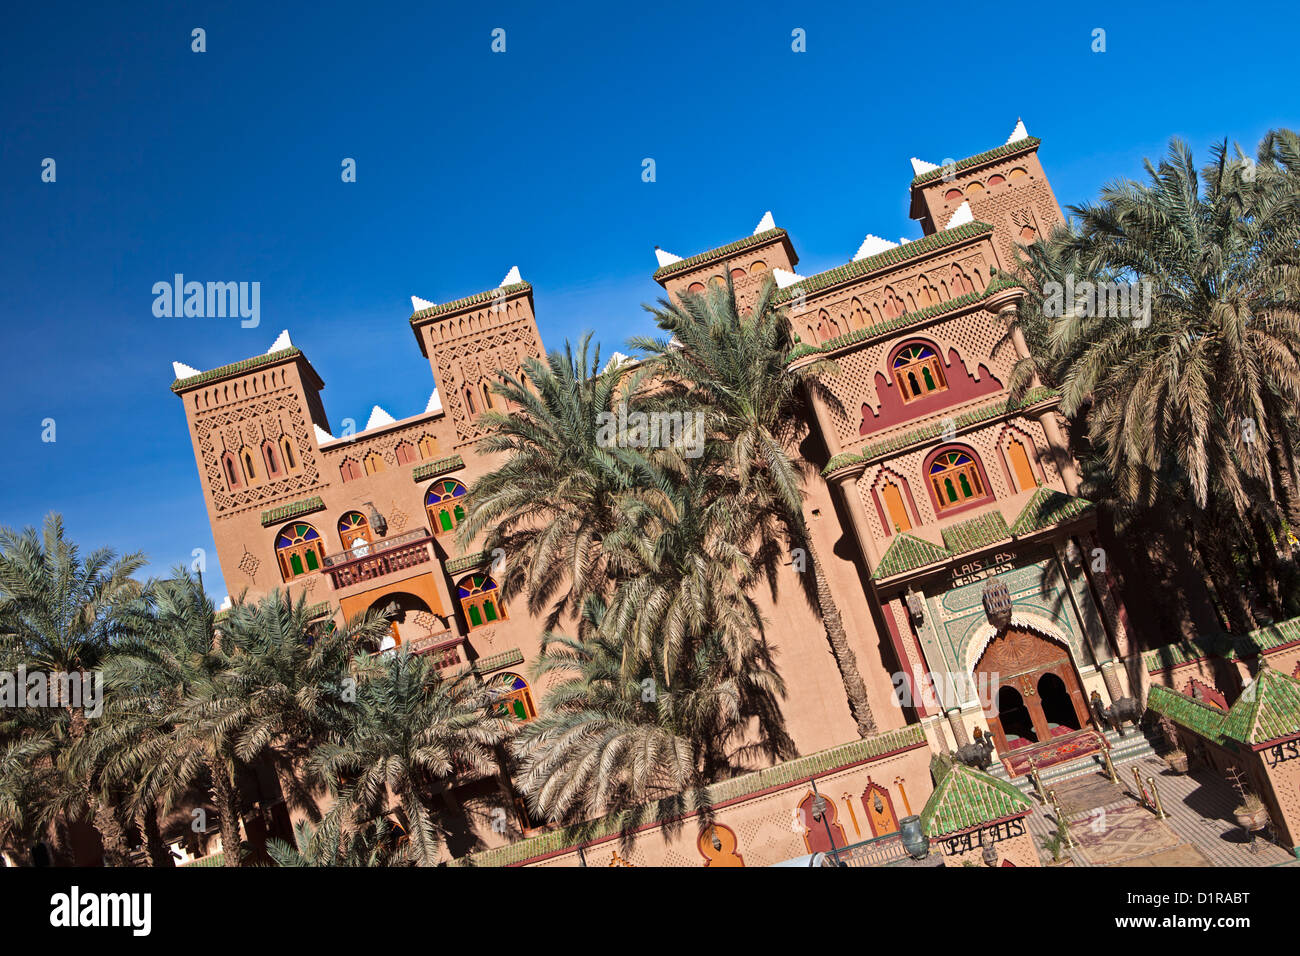 Morocco, Zagora, Hotel La kasbah. Stock Photo